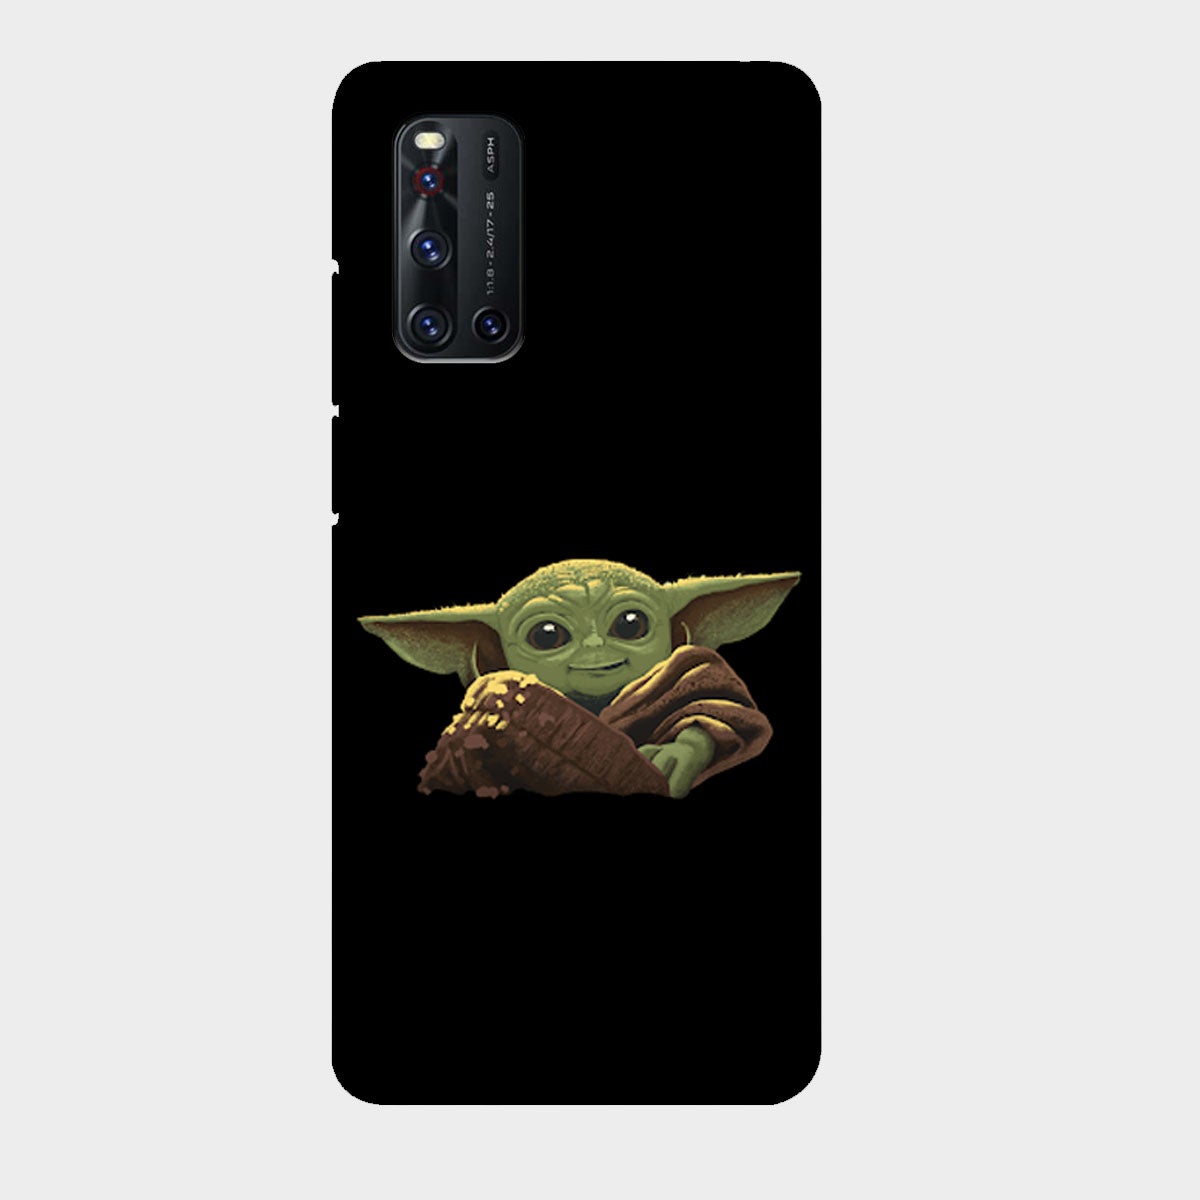 Baby Yoda - The Mandalorian - Mobile Phone Cover - Hard Case - Vivo